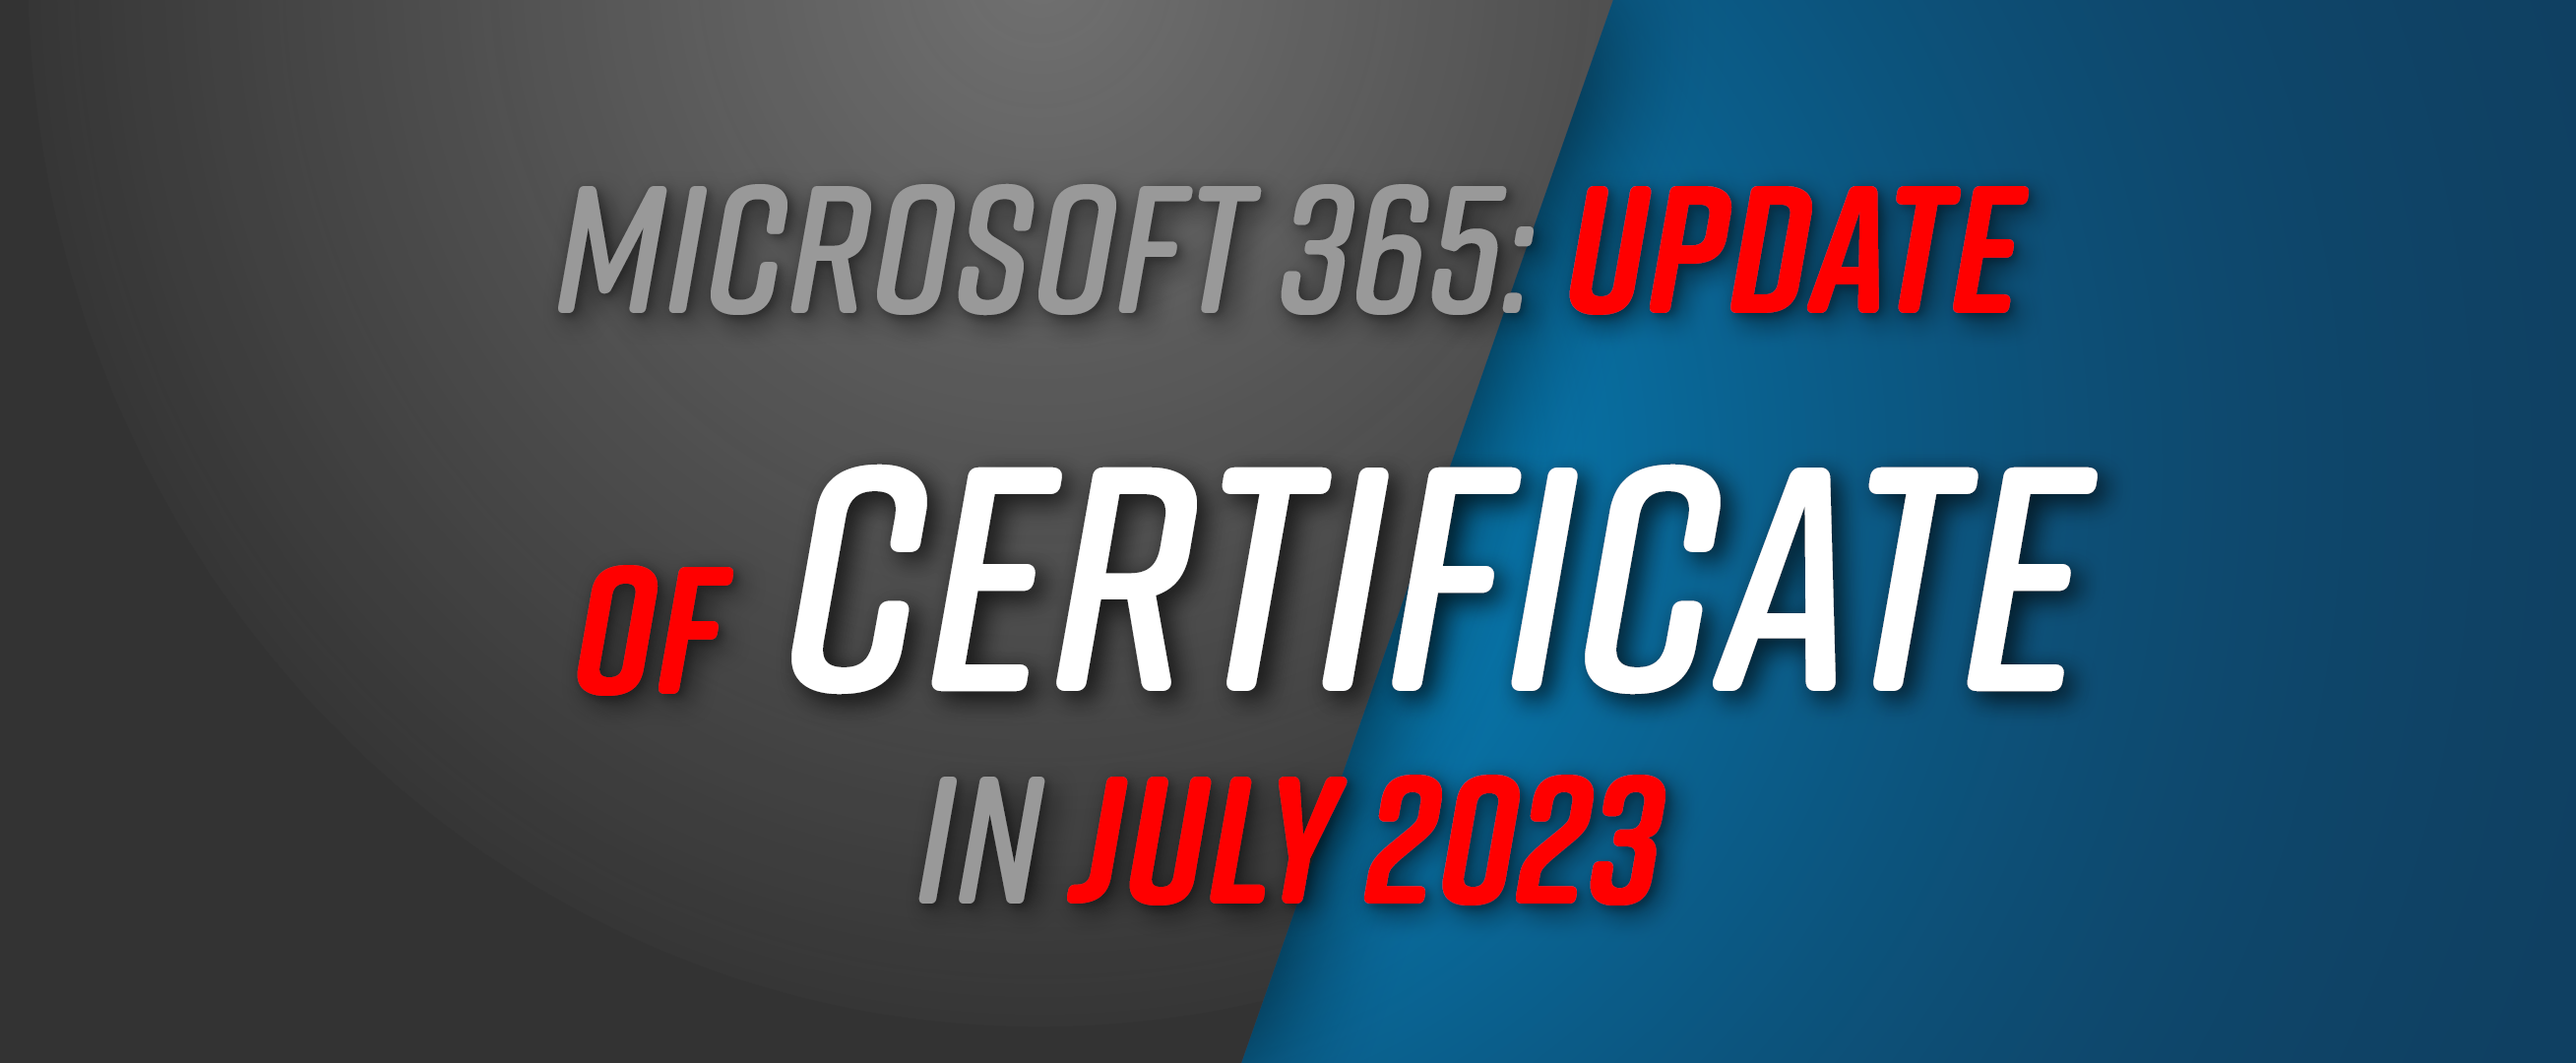 Microsoft 365: Certificate Update